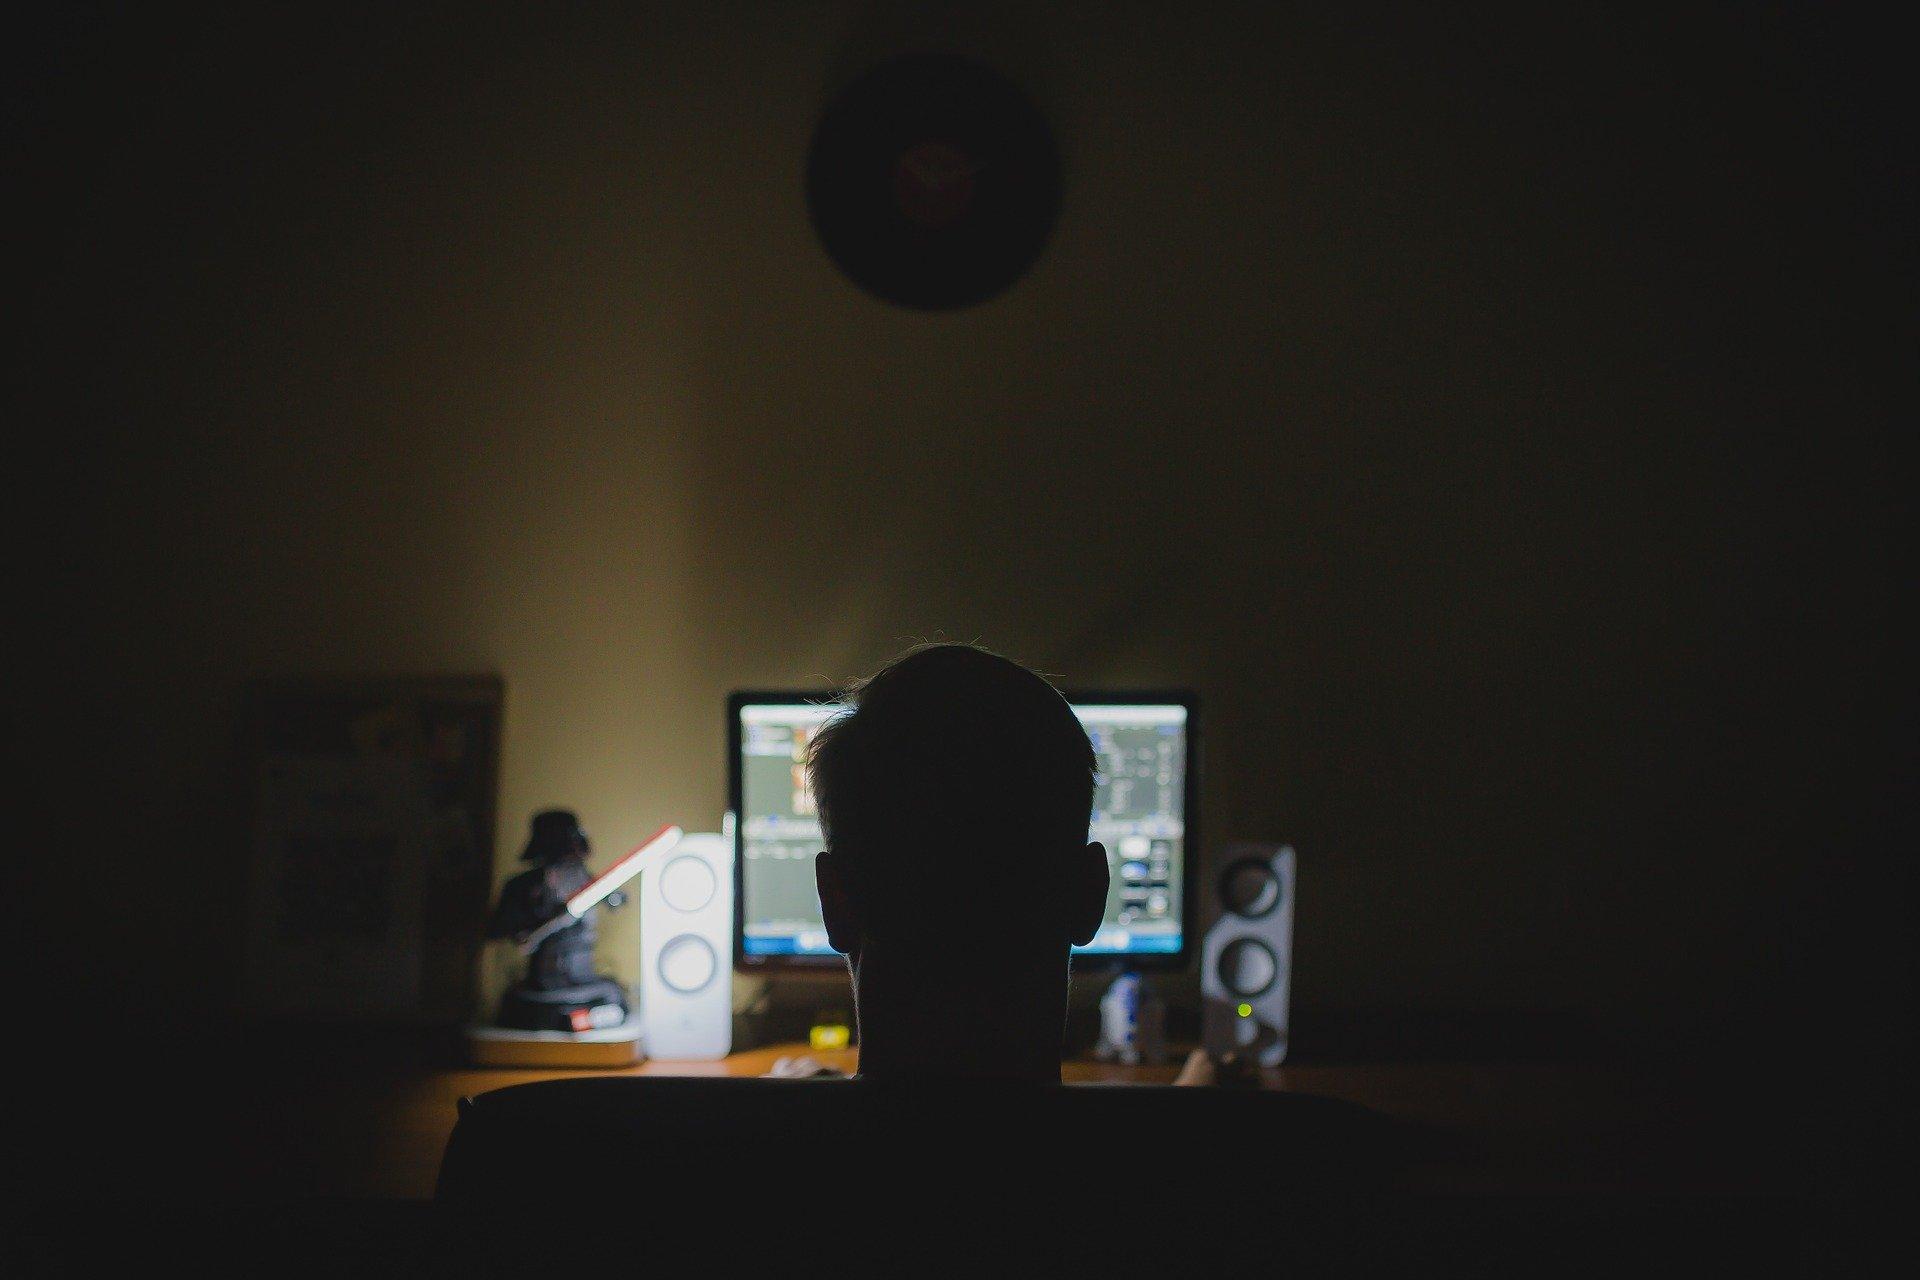 Una persona delante de un ordenador. Fuente: Pixabay.